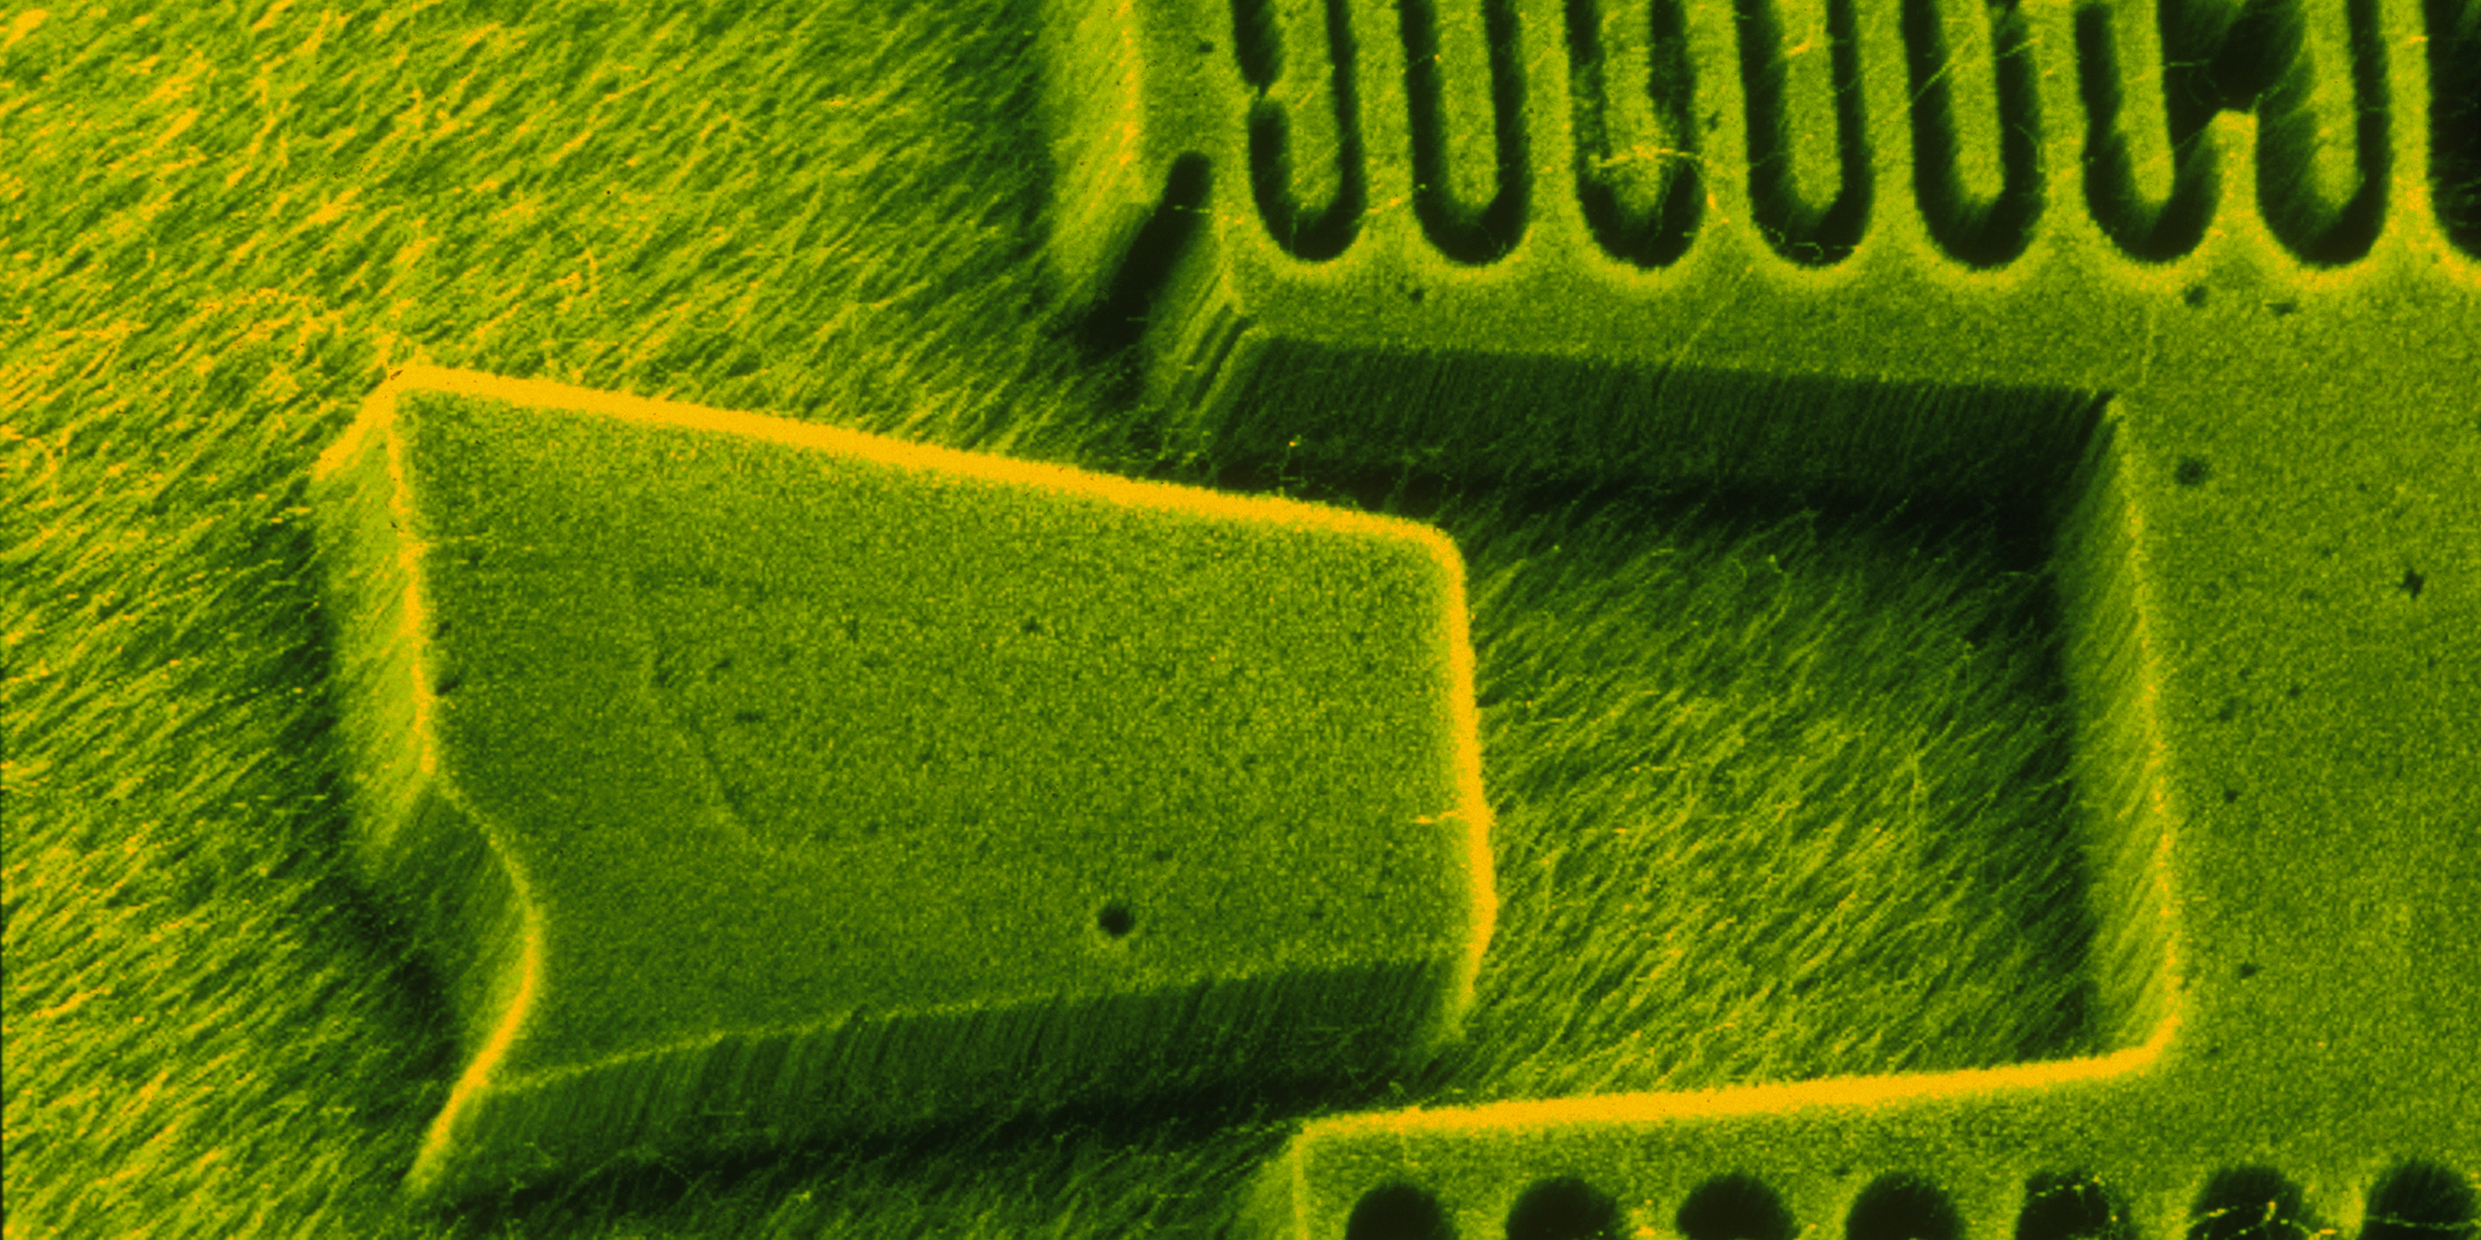 Image of nanoscopic electronics